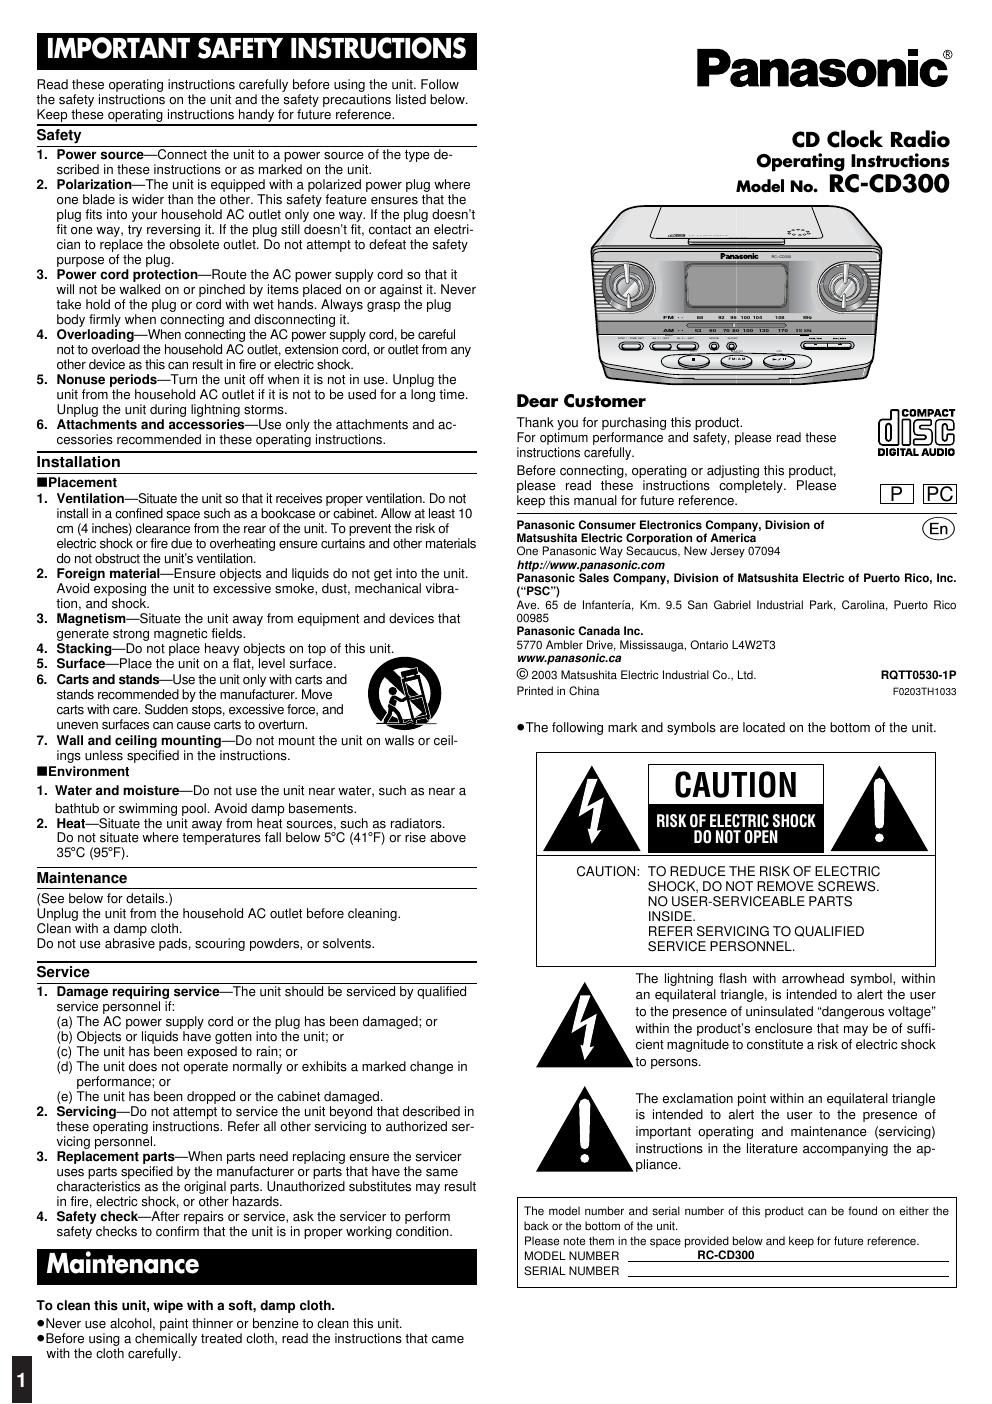 panasonic rc cd 300 owners manual